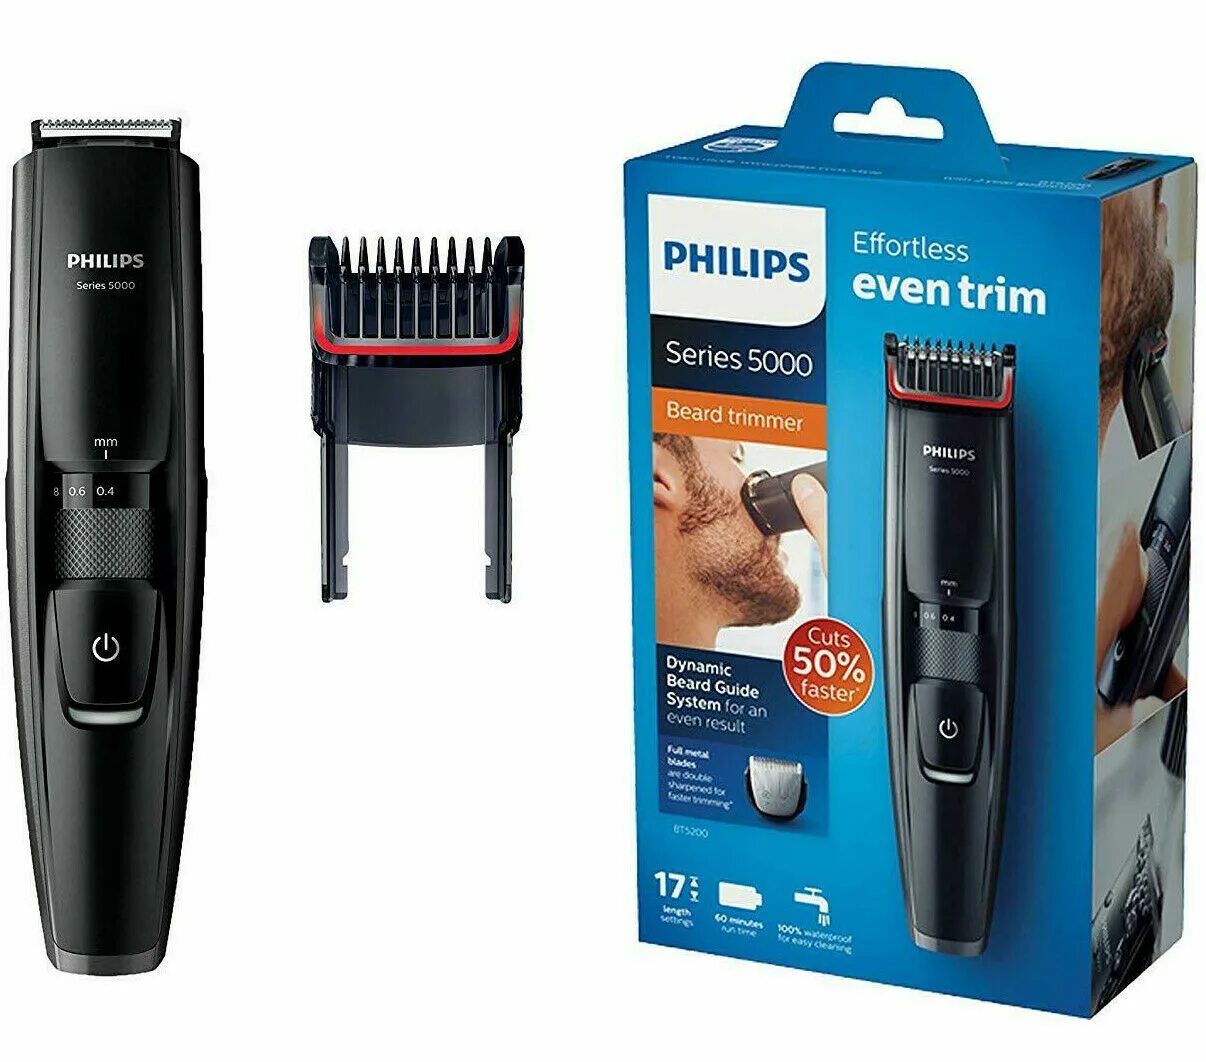 Купить филипс 5000. Philips bt5200. Триммер Philips bt5200. Philips Beard Trimmer 5000. Philips Series 5000 bt5200/16.